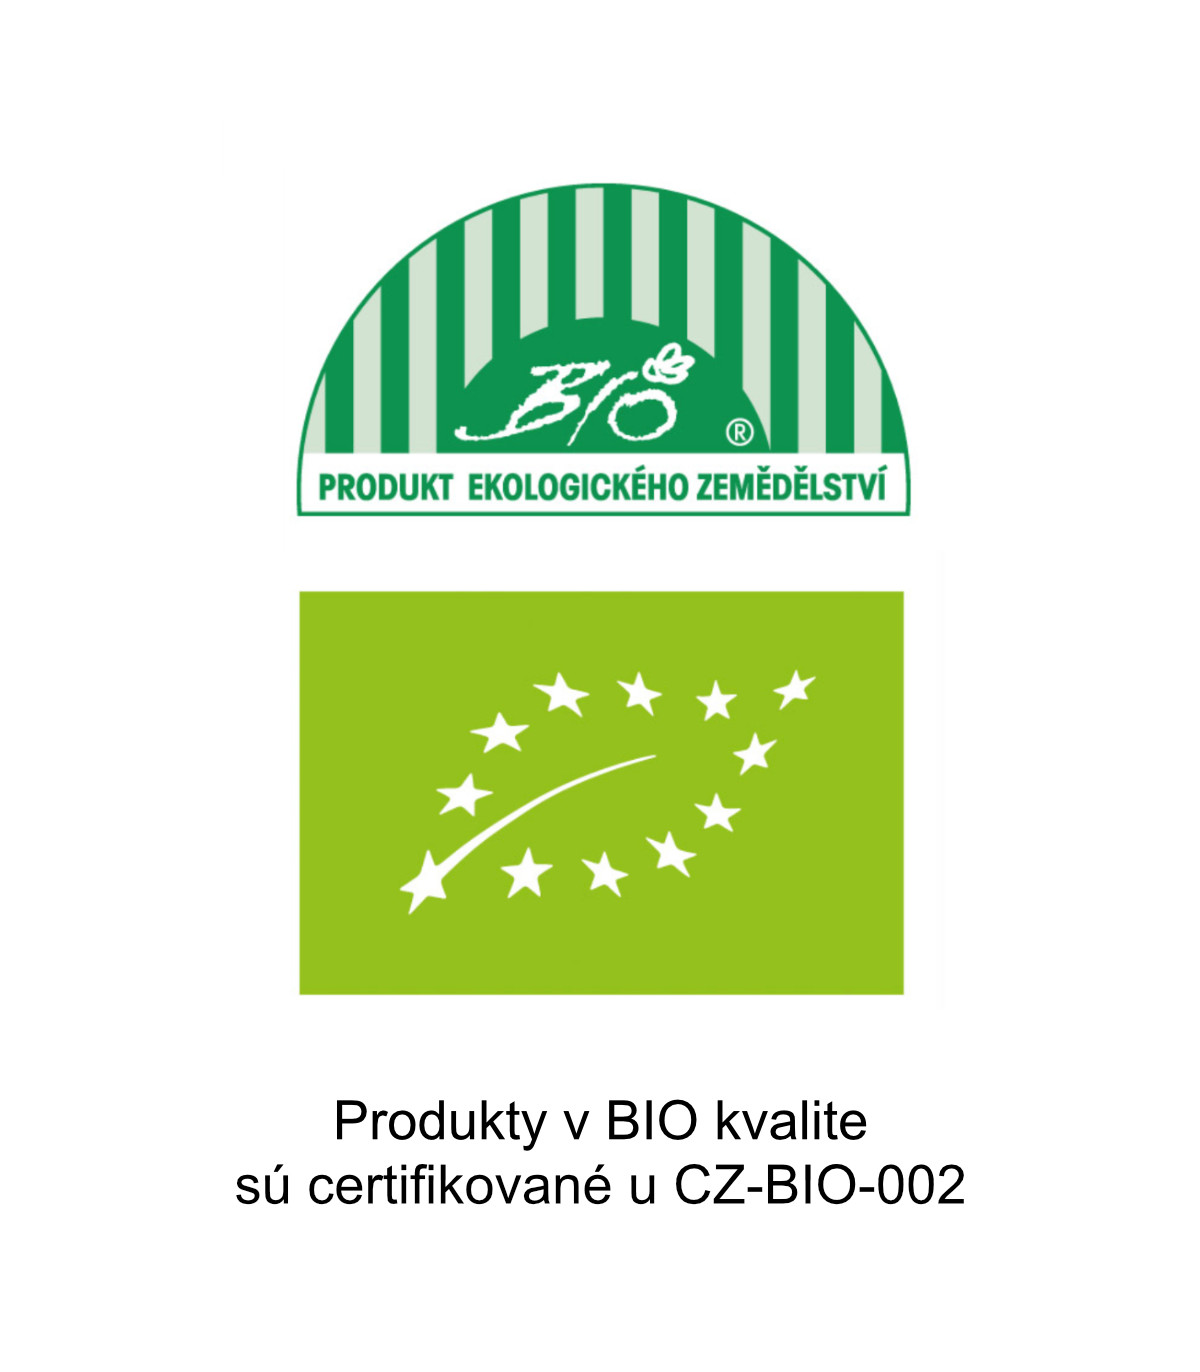 BIO paradajka kolíková Produkty v BIO kvalite
sú certifikované u CZ-BIO-002